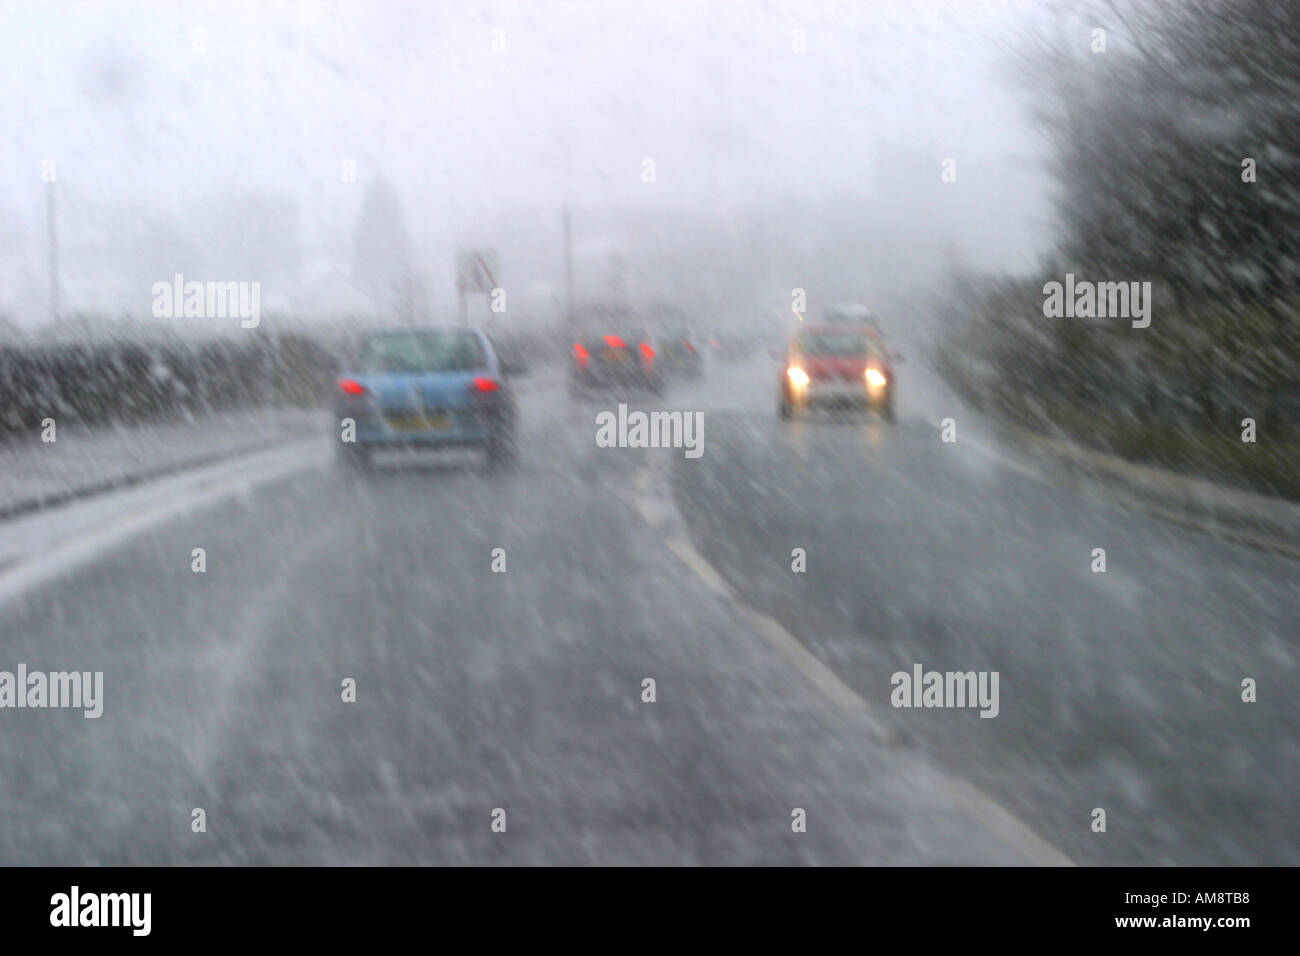 Vía urbana de conducción en coche con aguanieve y nieve Foto de stock